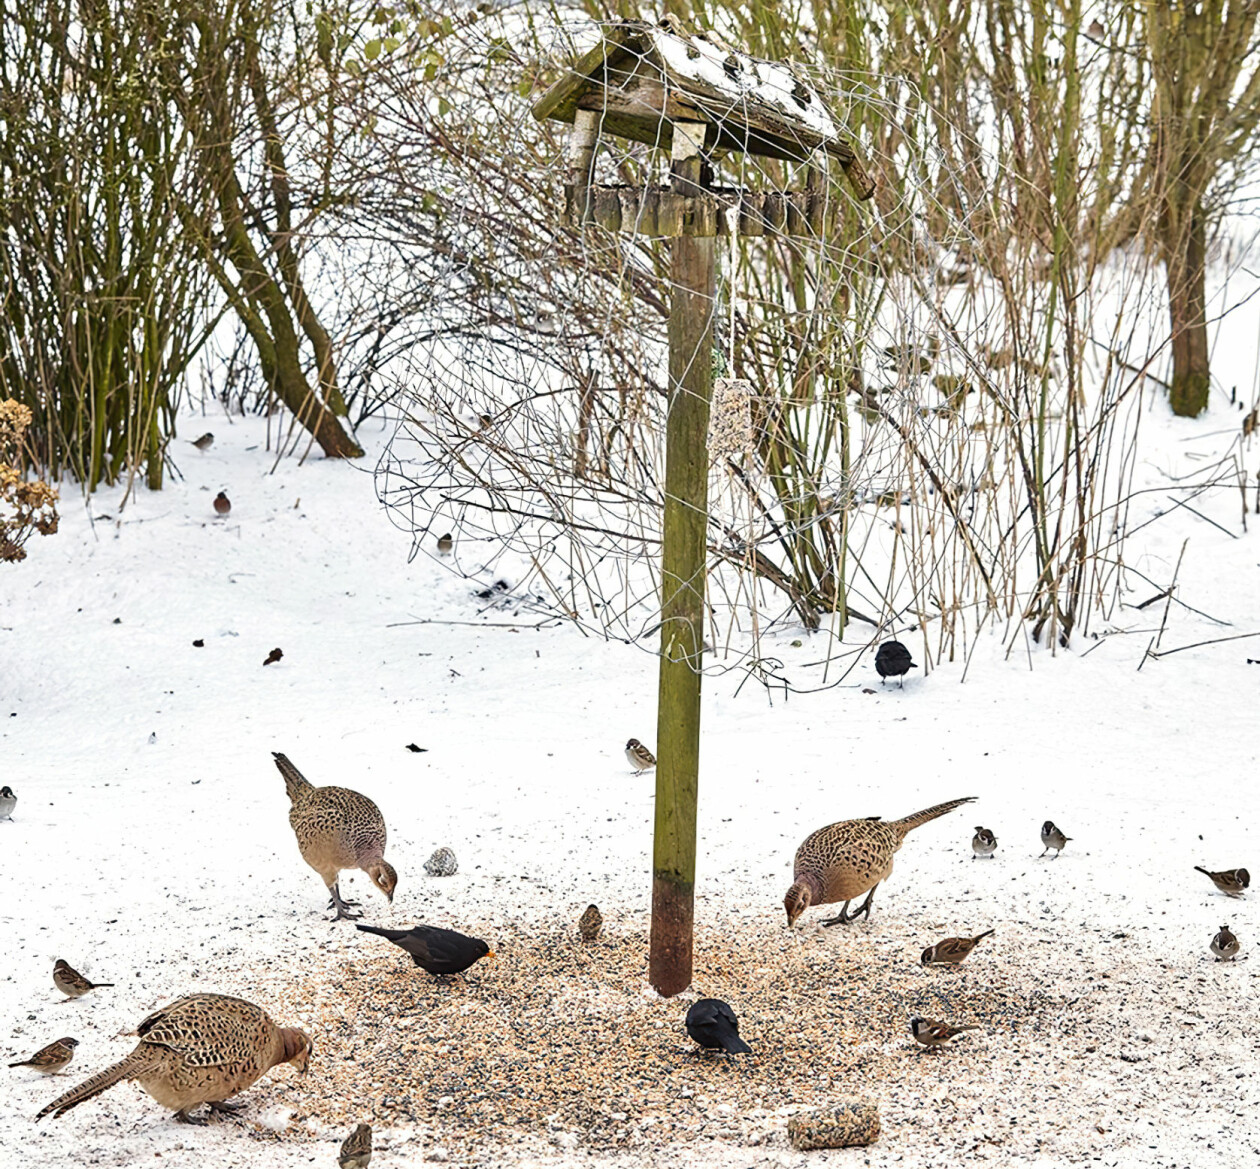 Flera olika småfåglar äter från marken runt en matare.